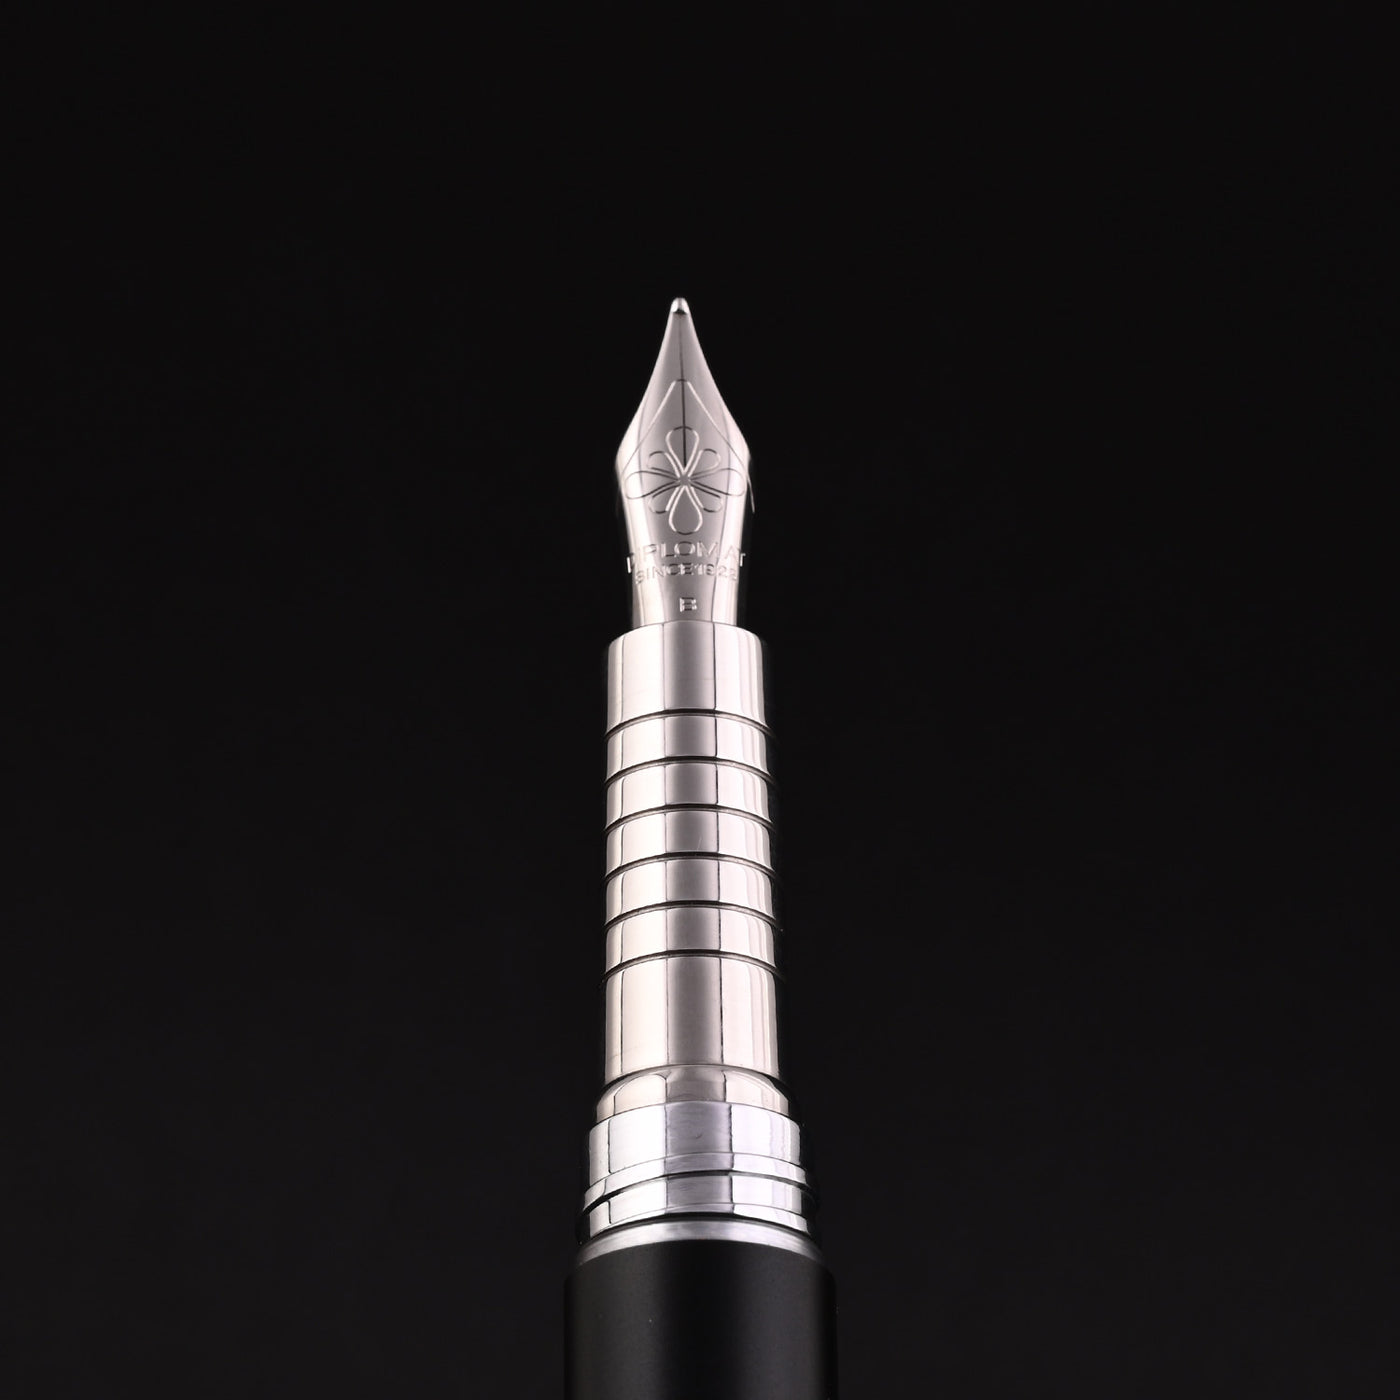 Diplomat Nexus Fountain Pen - Demo Black CT 10